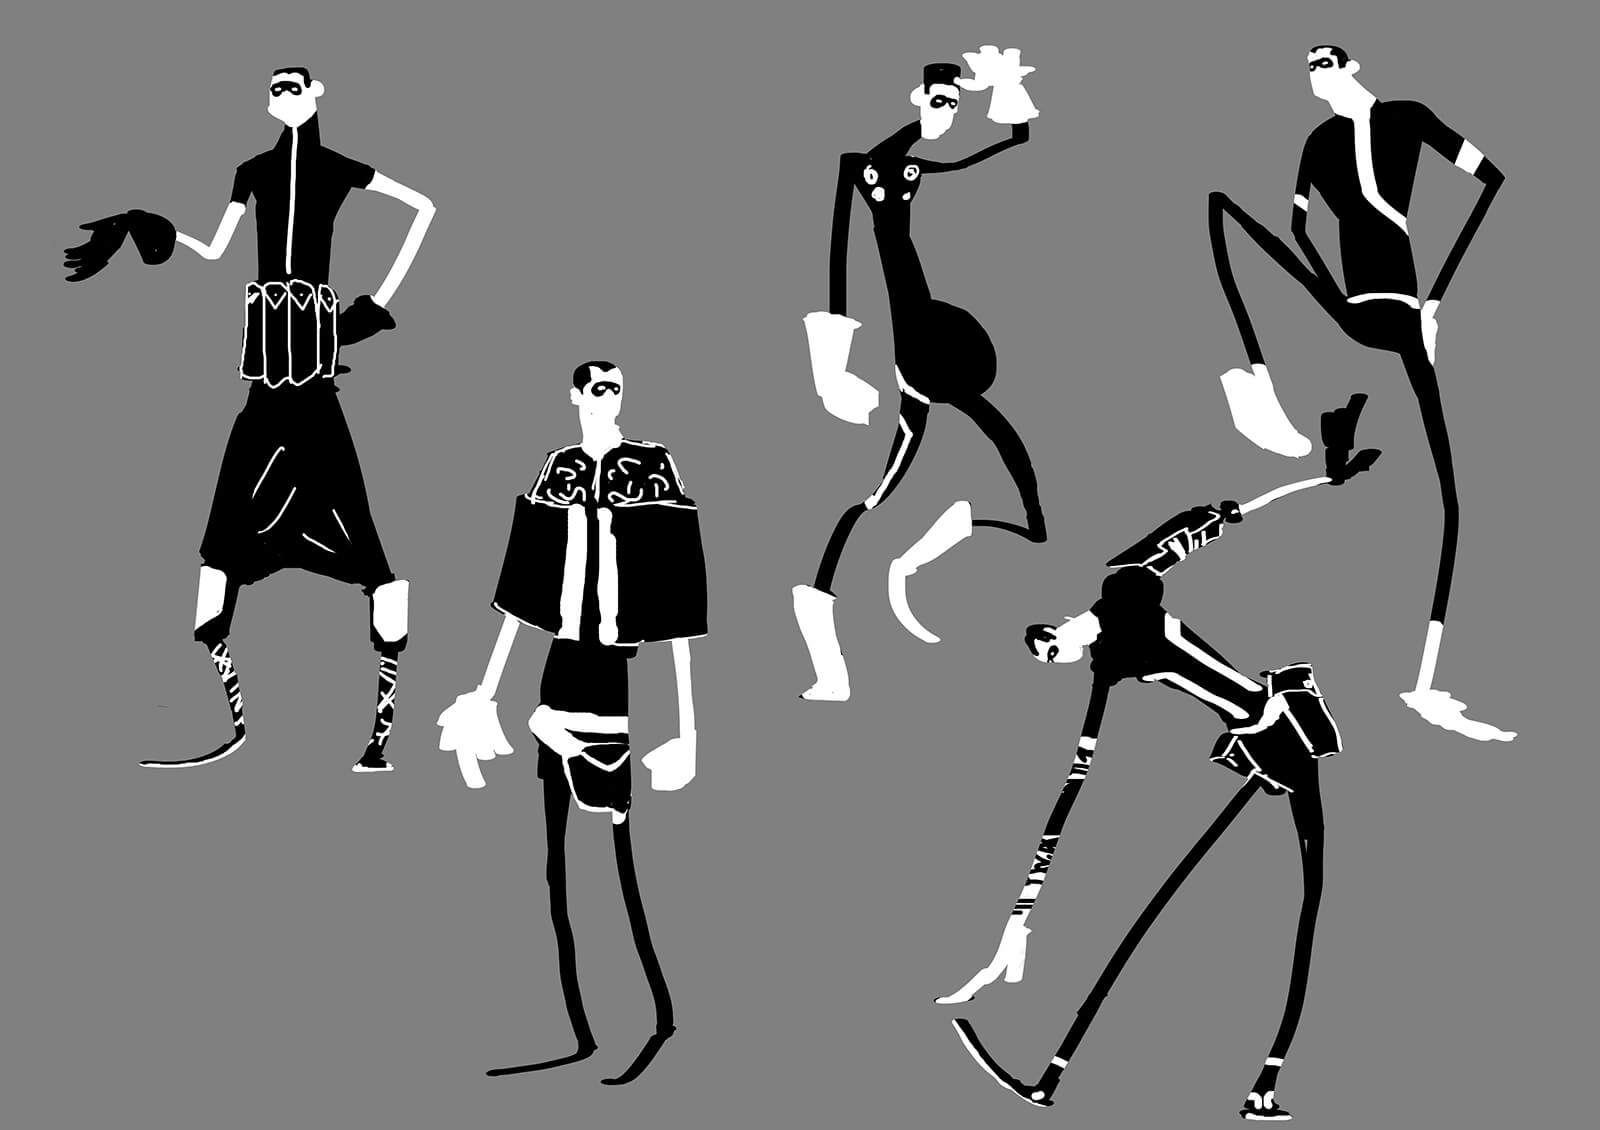 Bocetos conceptuales en blanco y negro de un hombre alto y delgado en diferentes poses y ropajes.